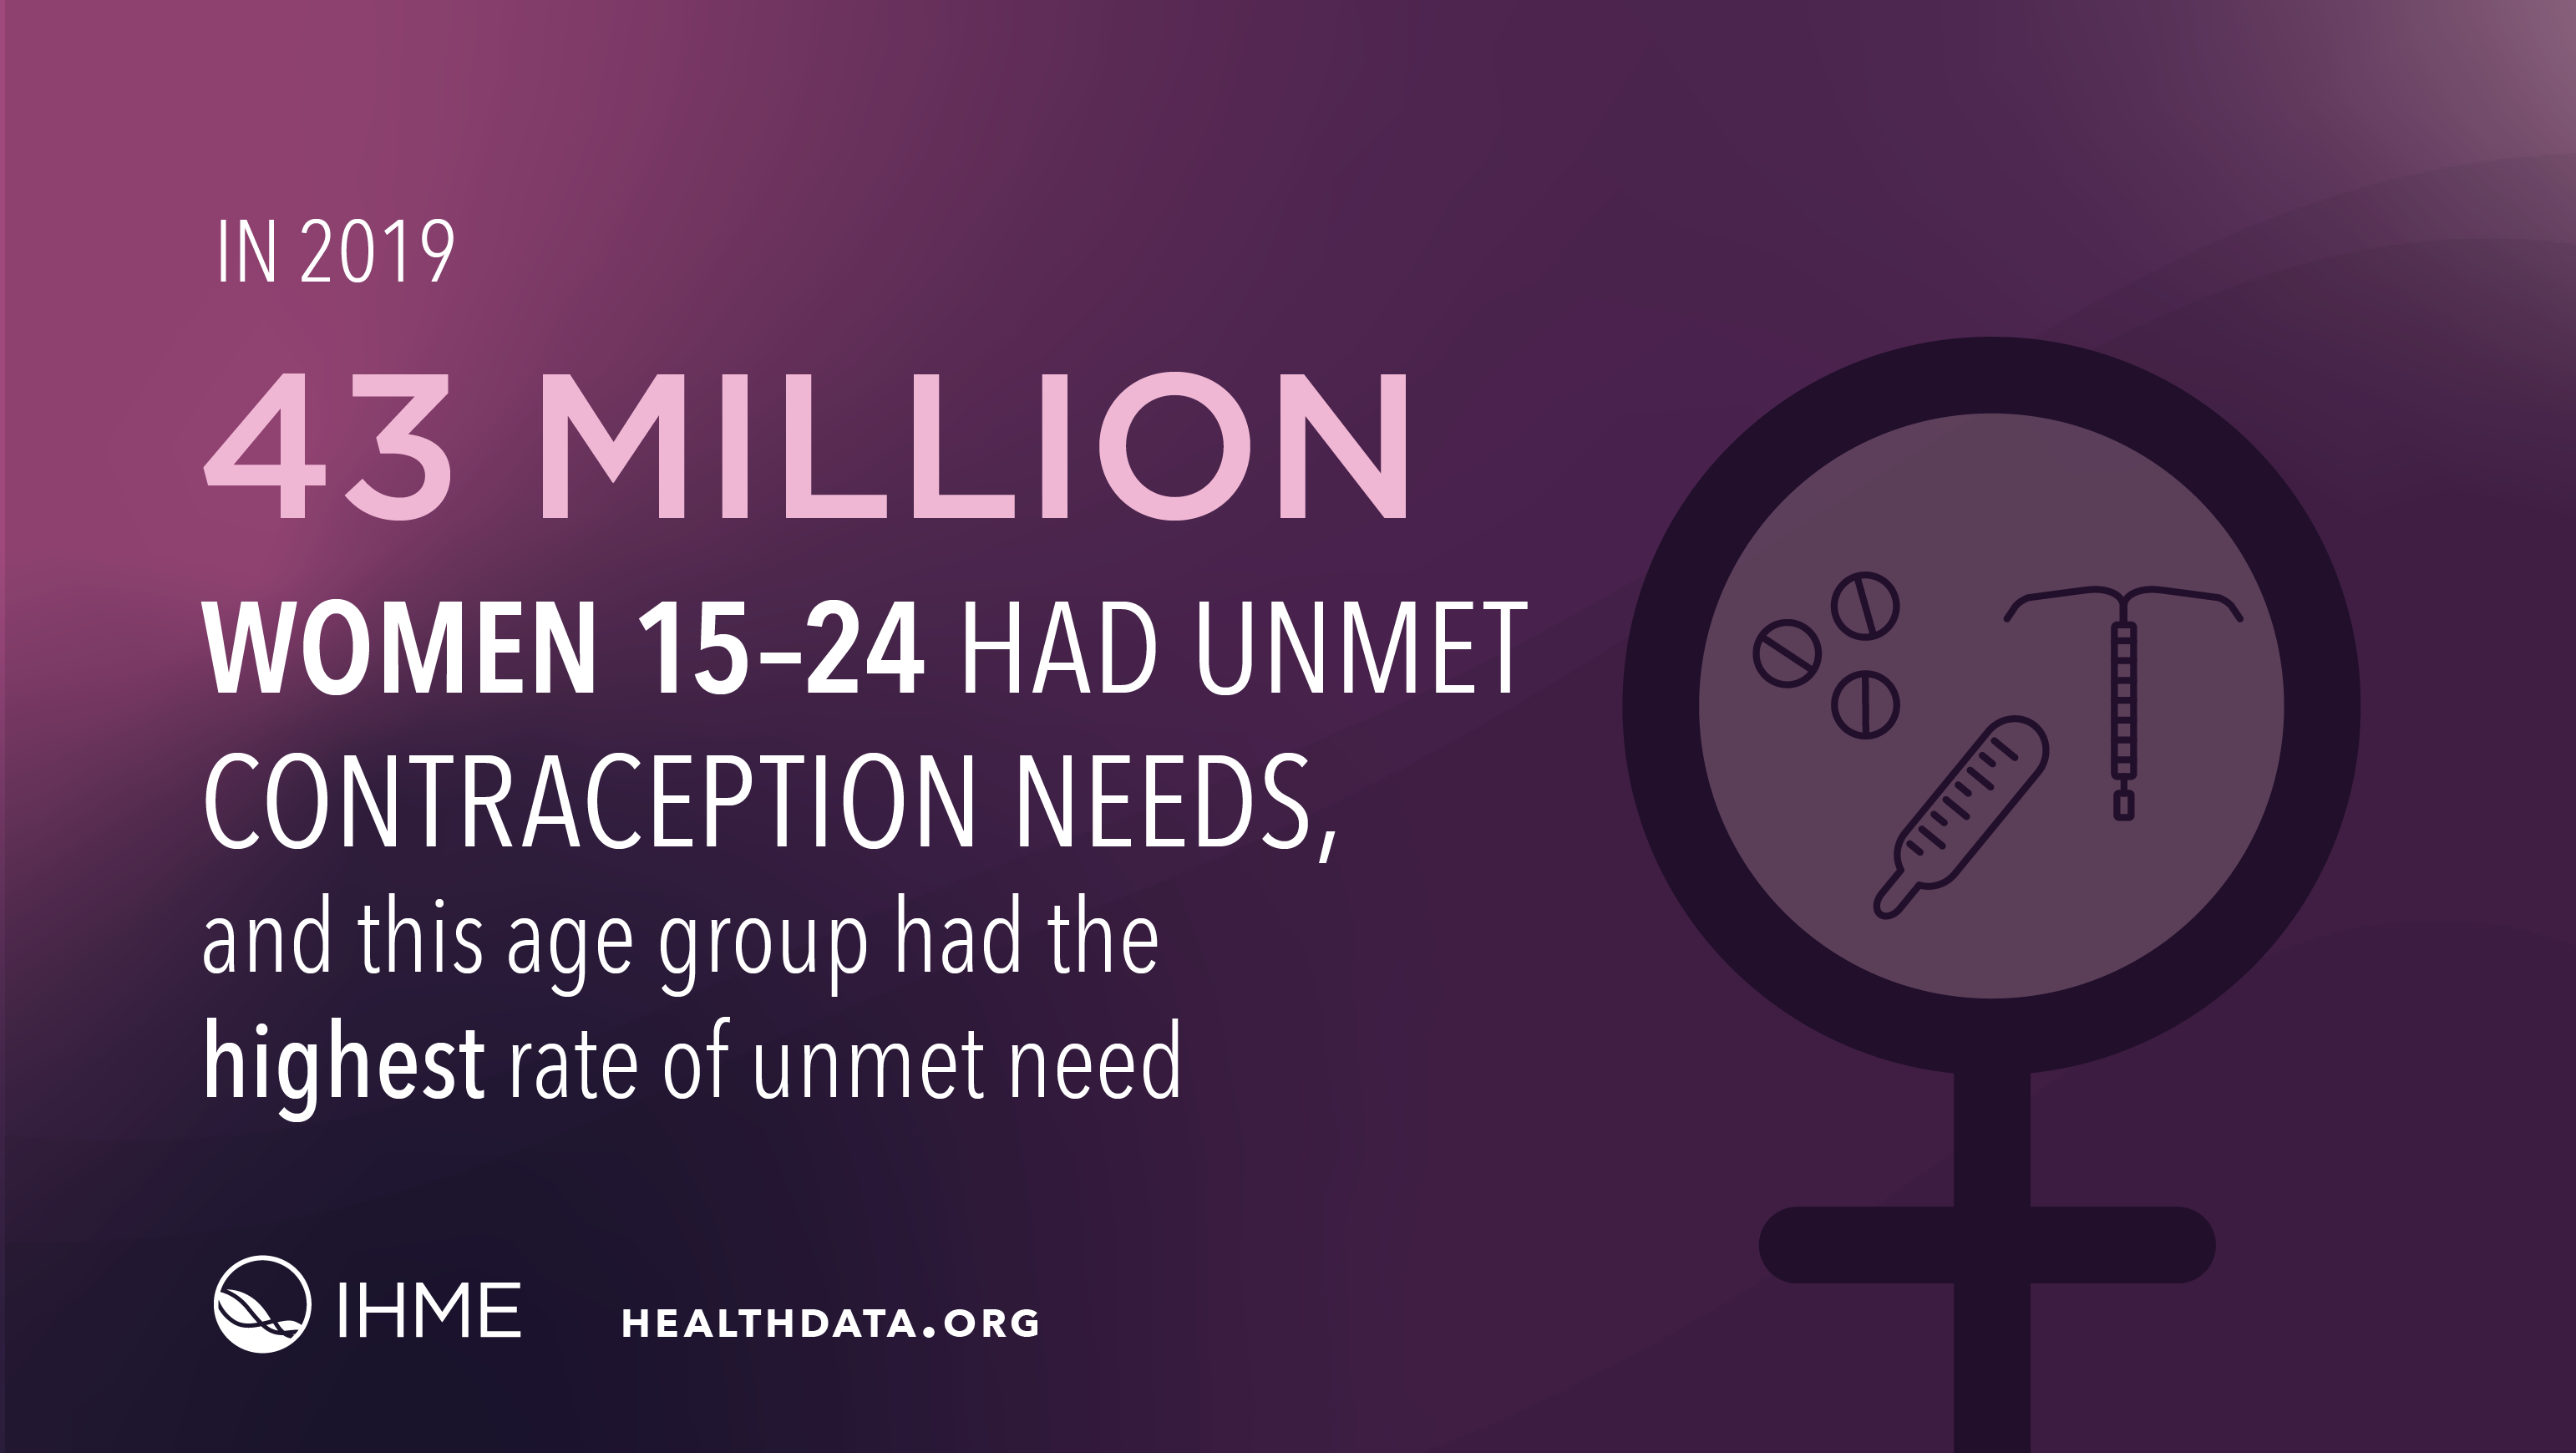 The Lancet: 160 million women worldwide have unmet contraception